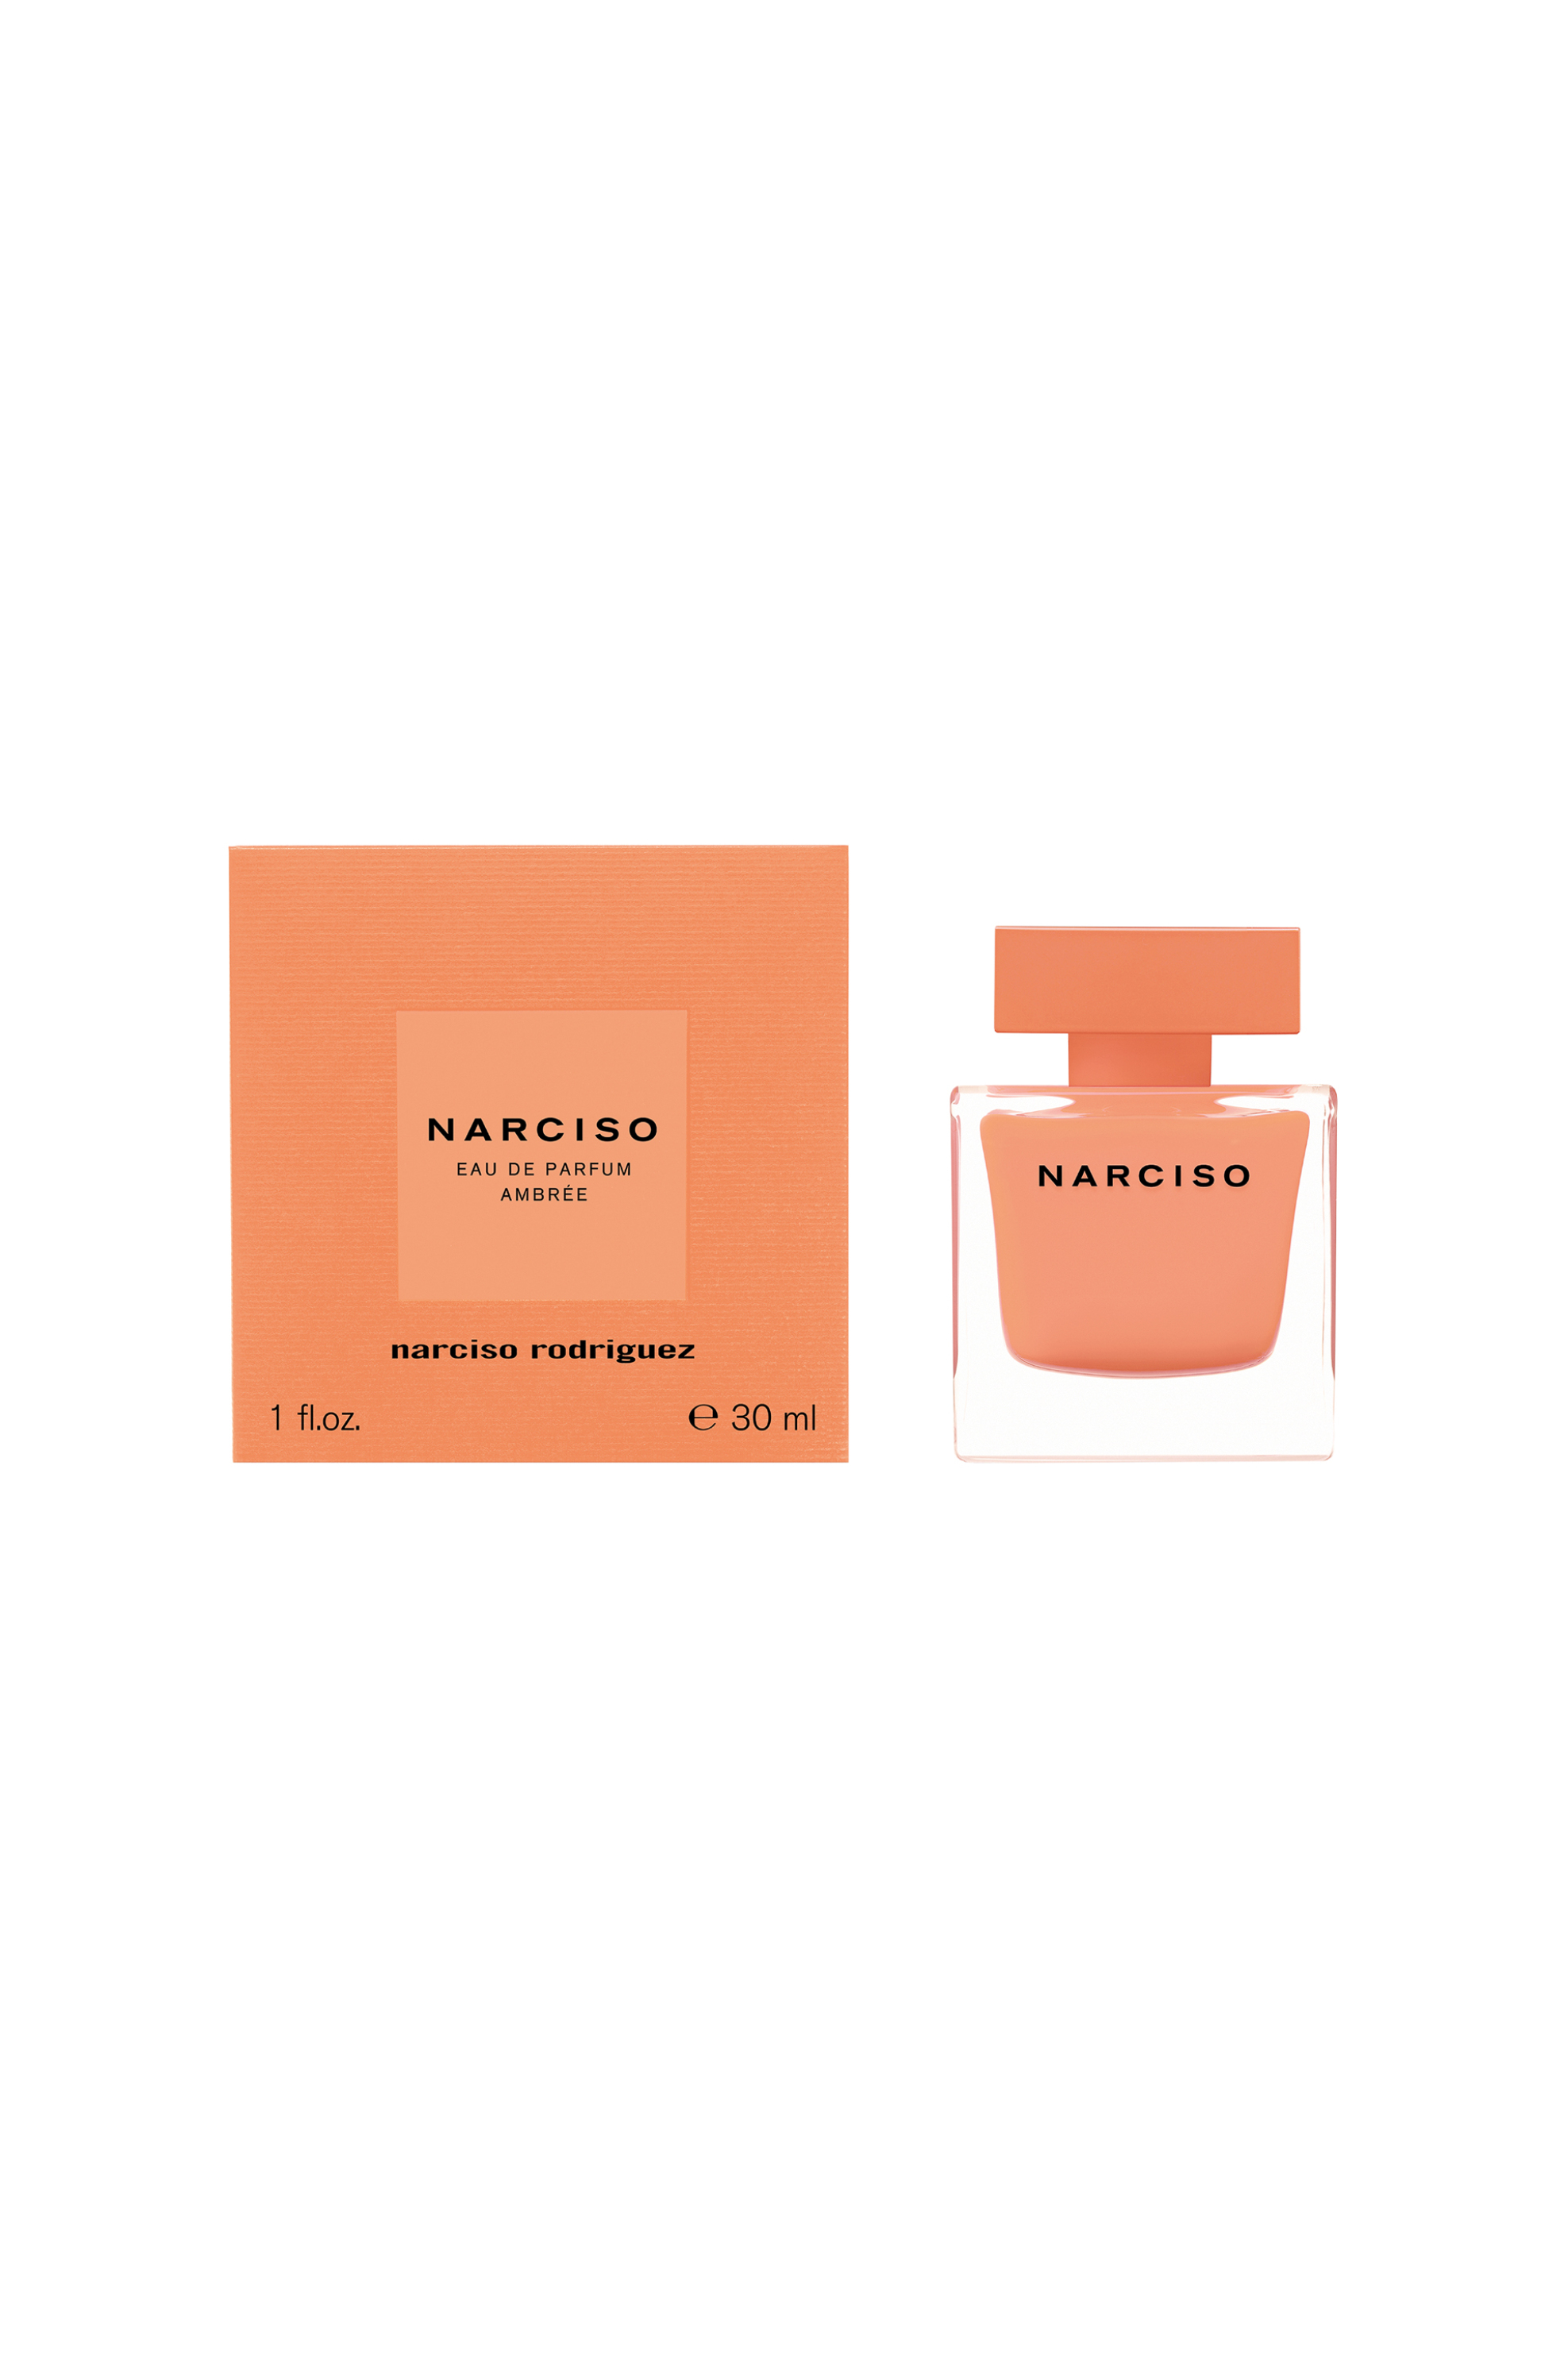 Narciso Rodriguez Narciso Eau de Parfum Ambrée - 30537500000 1057394